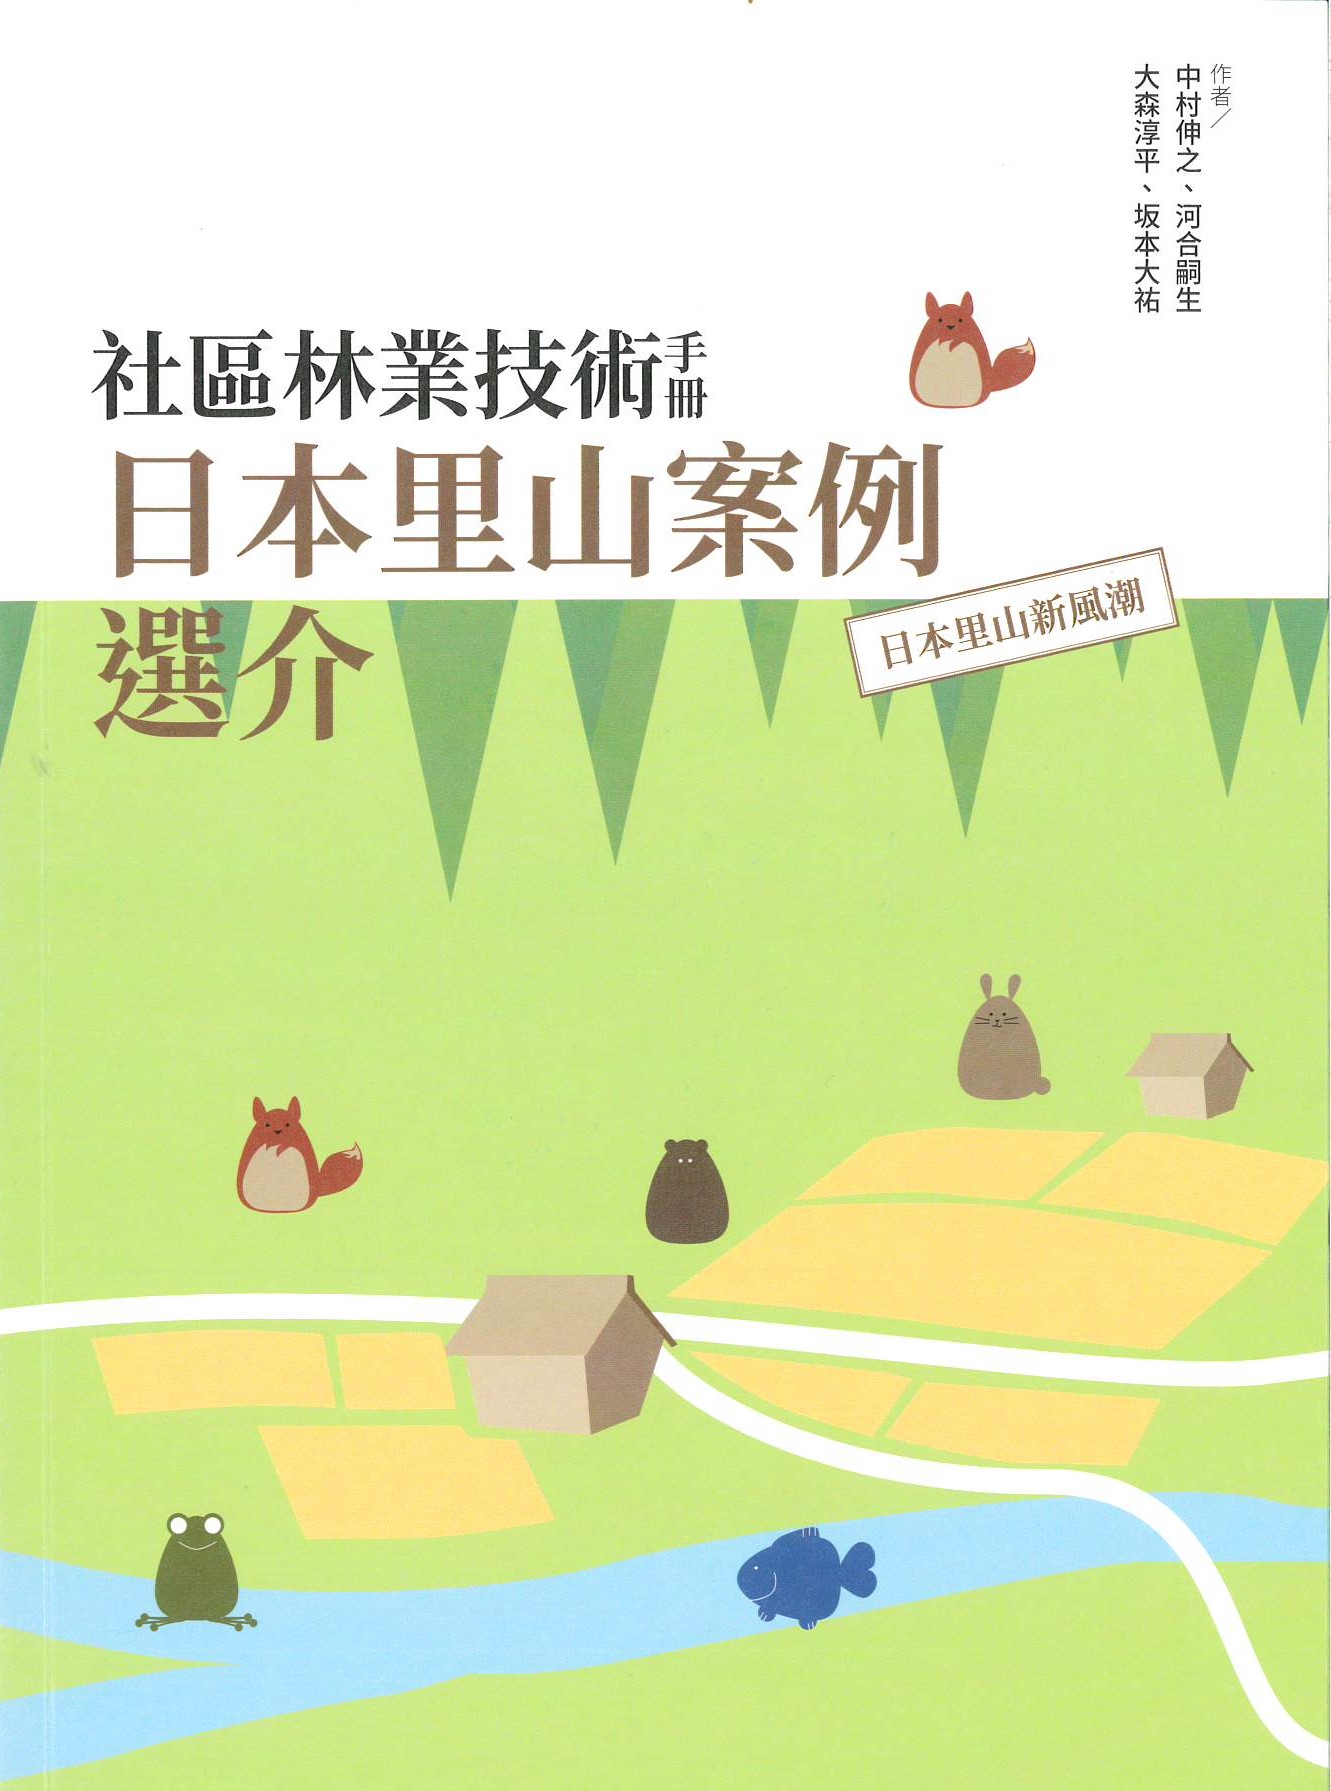 社區林業技術手冊: 日本里山案例選介: 日本里山新風潮